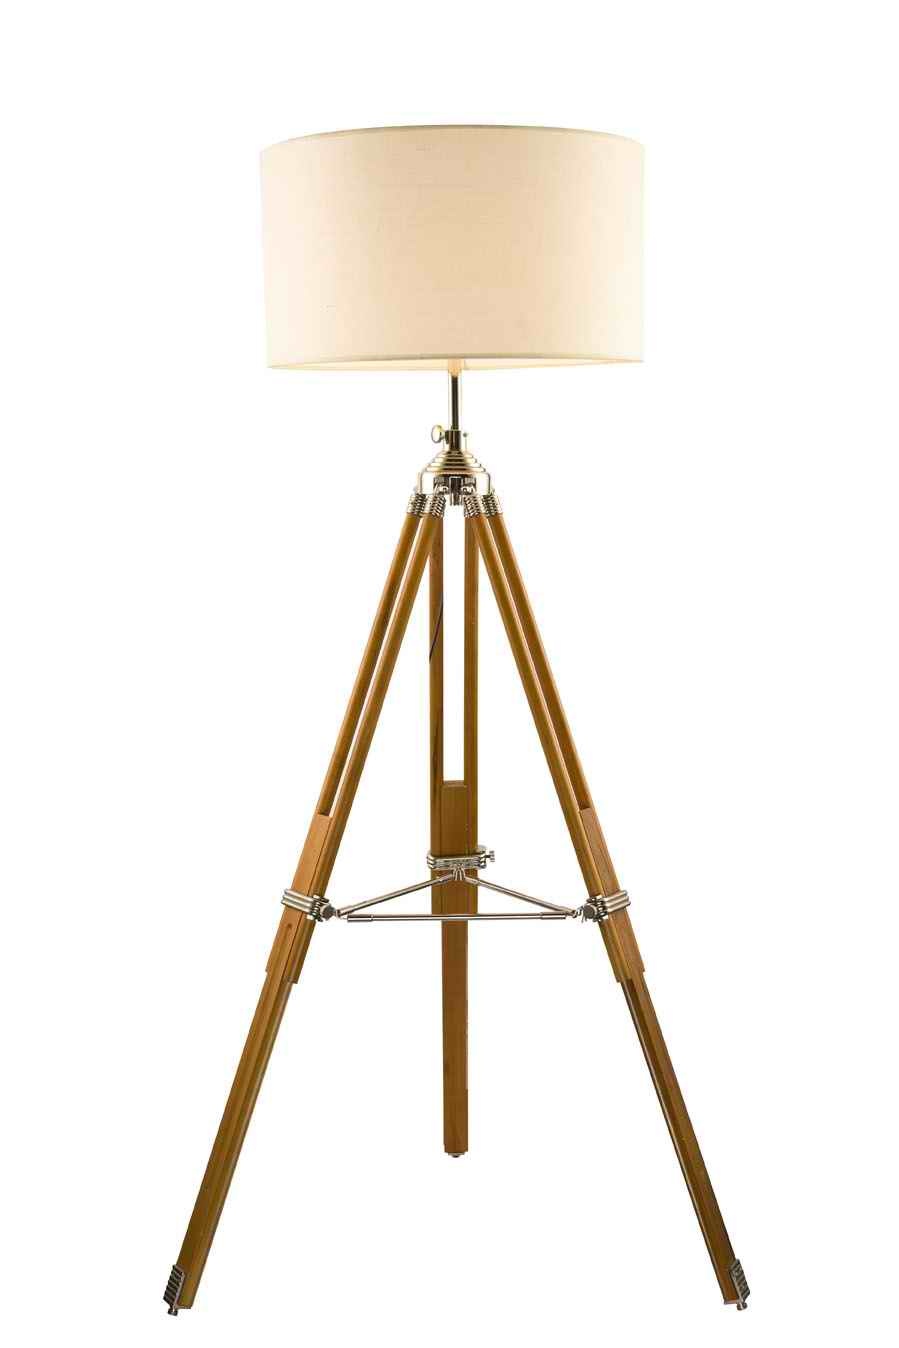 Tripod wood floor lamps for bedroom